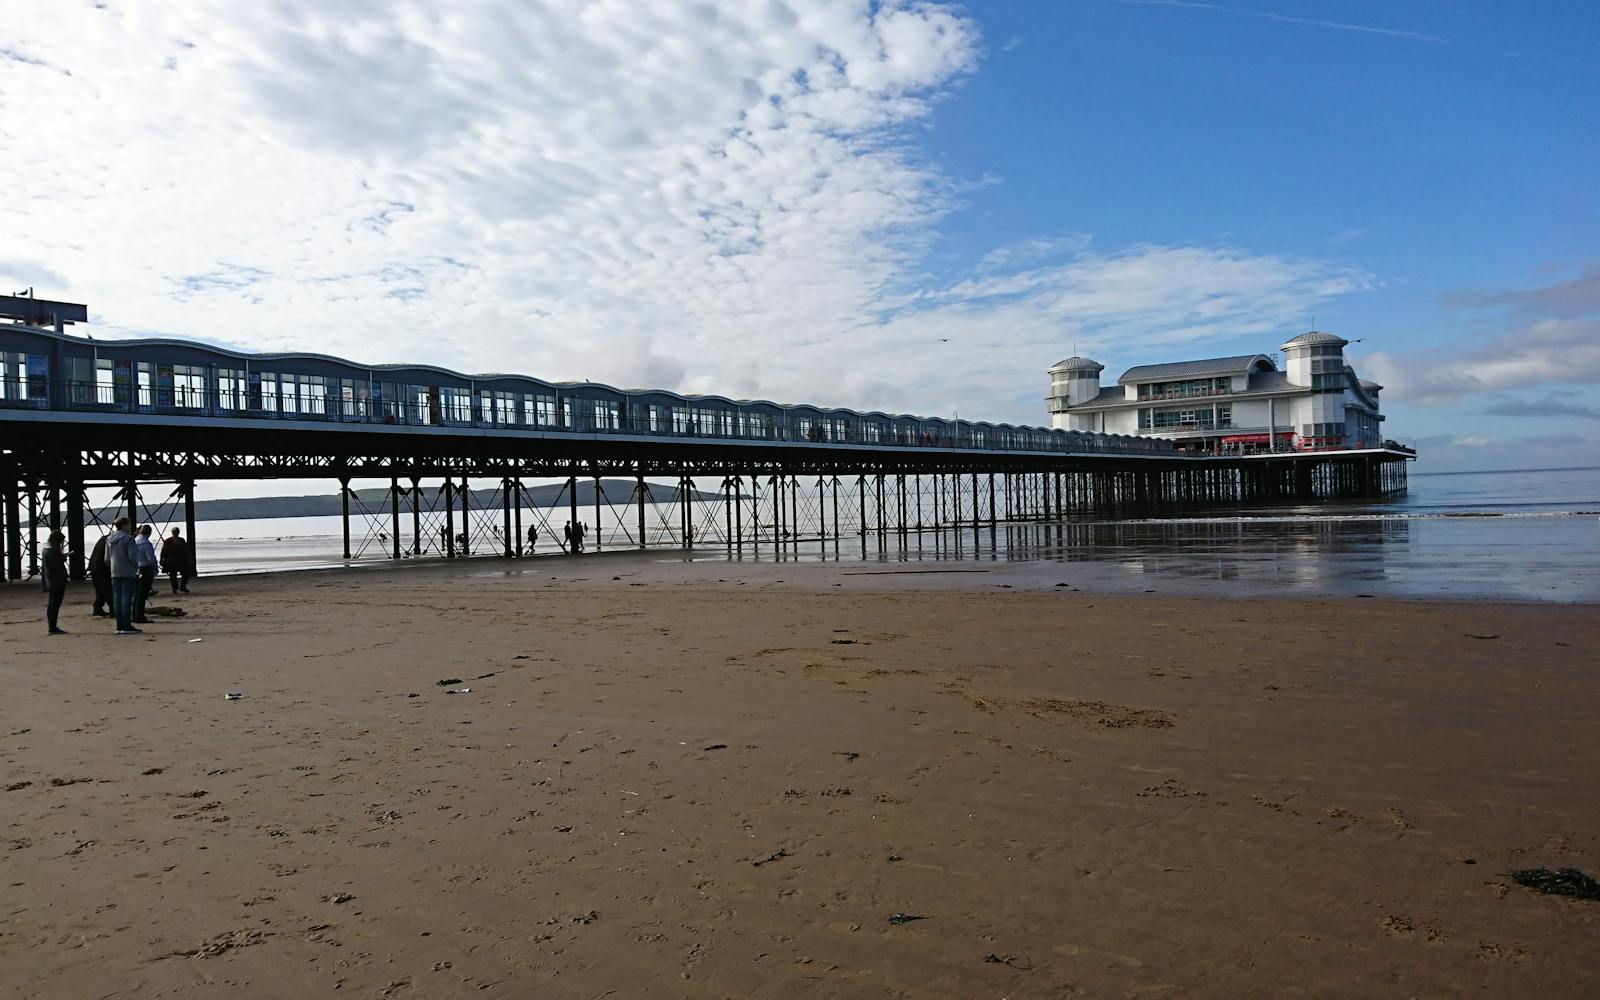 A beach and pier